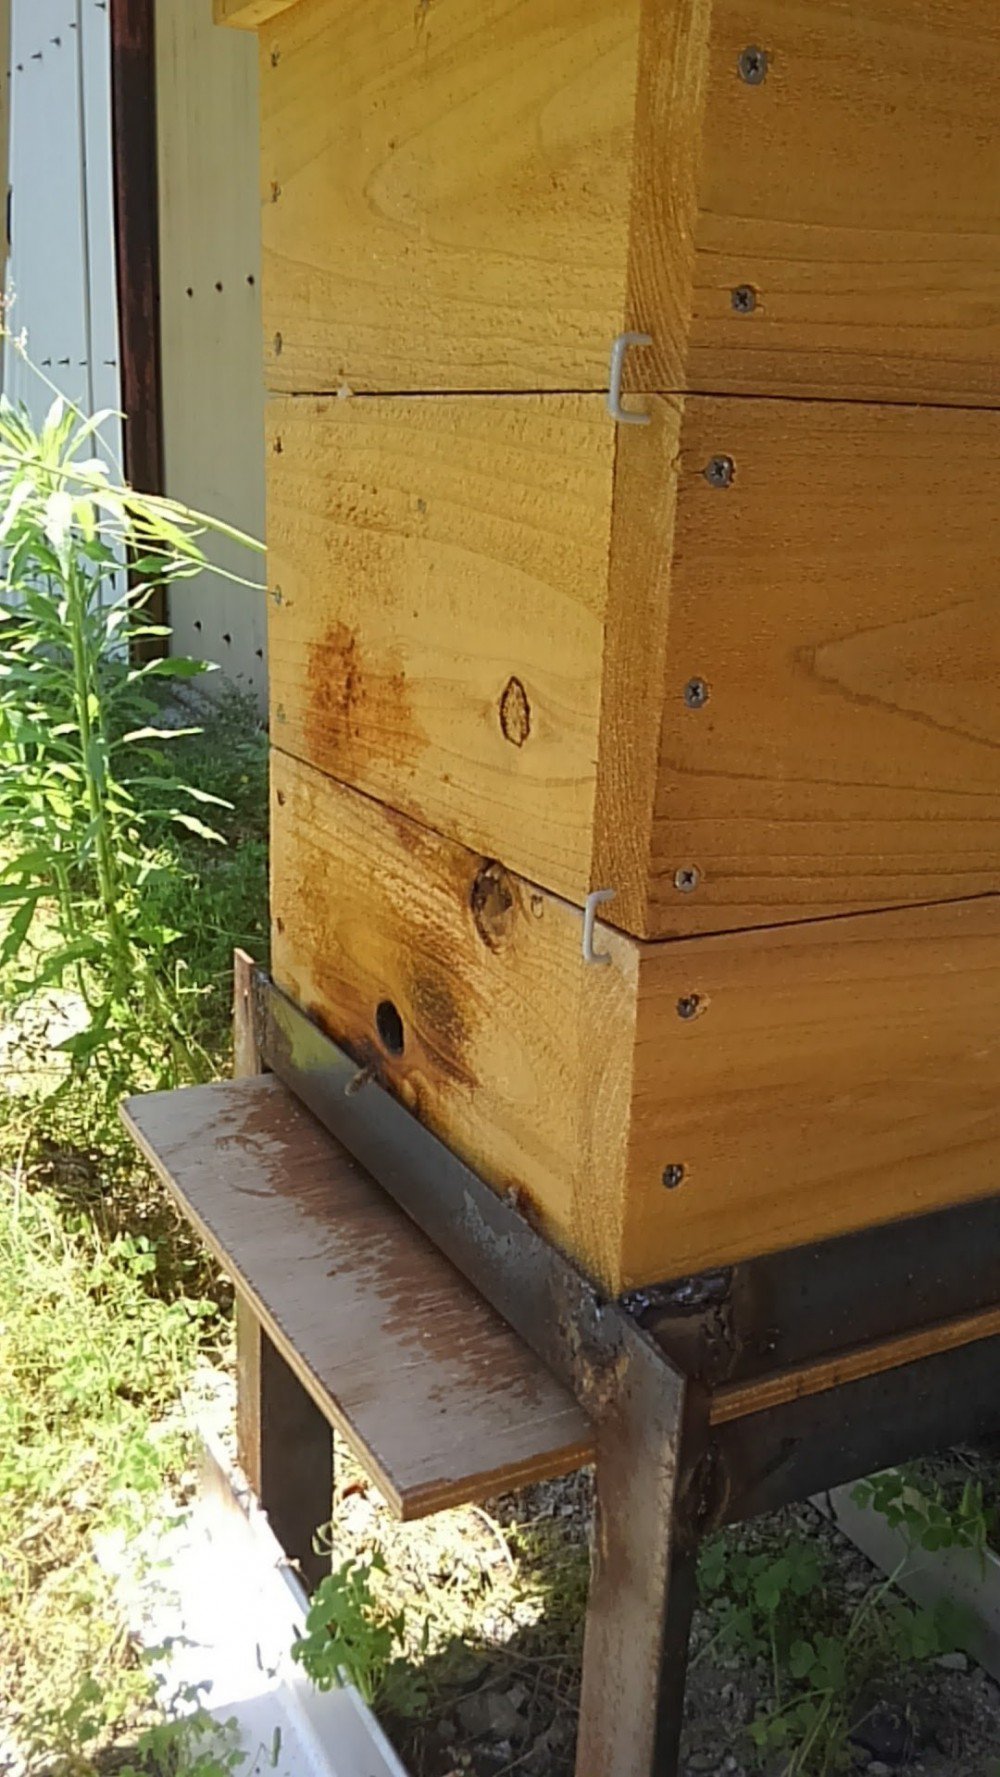 日本蜜蜂の待ち箱の巣門は一面？ それとも四面が良いでしょうか 